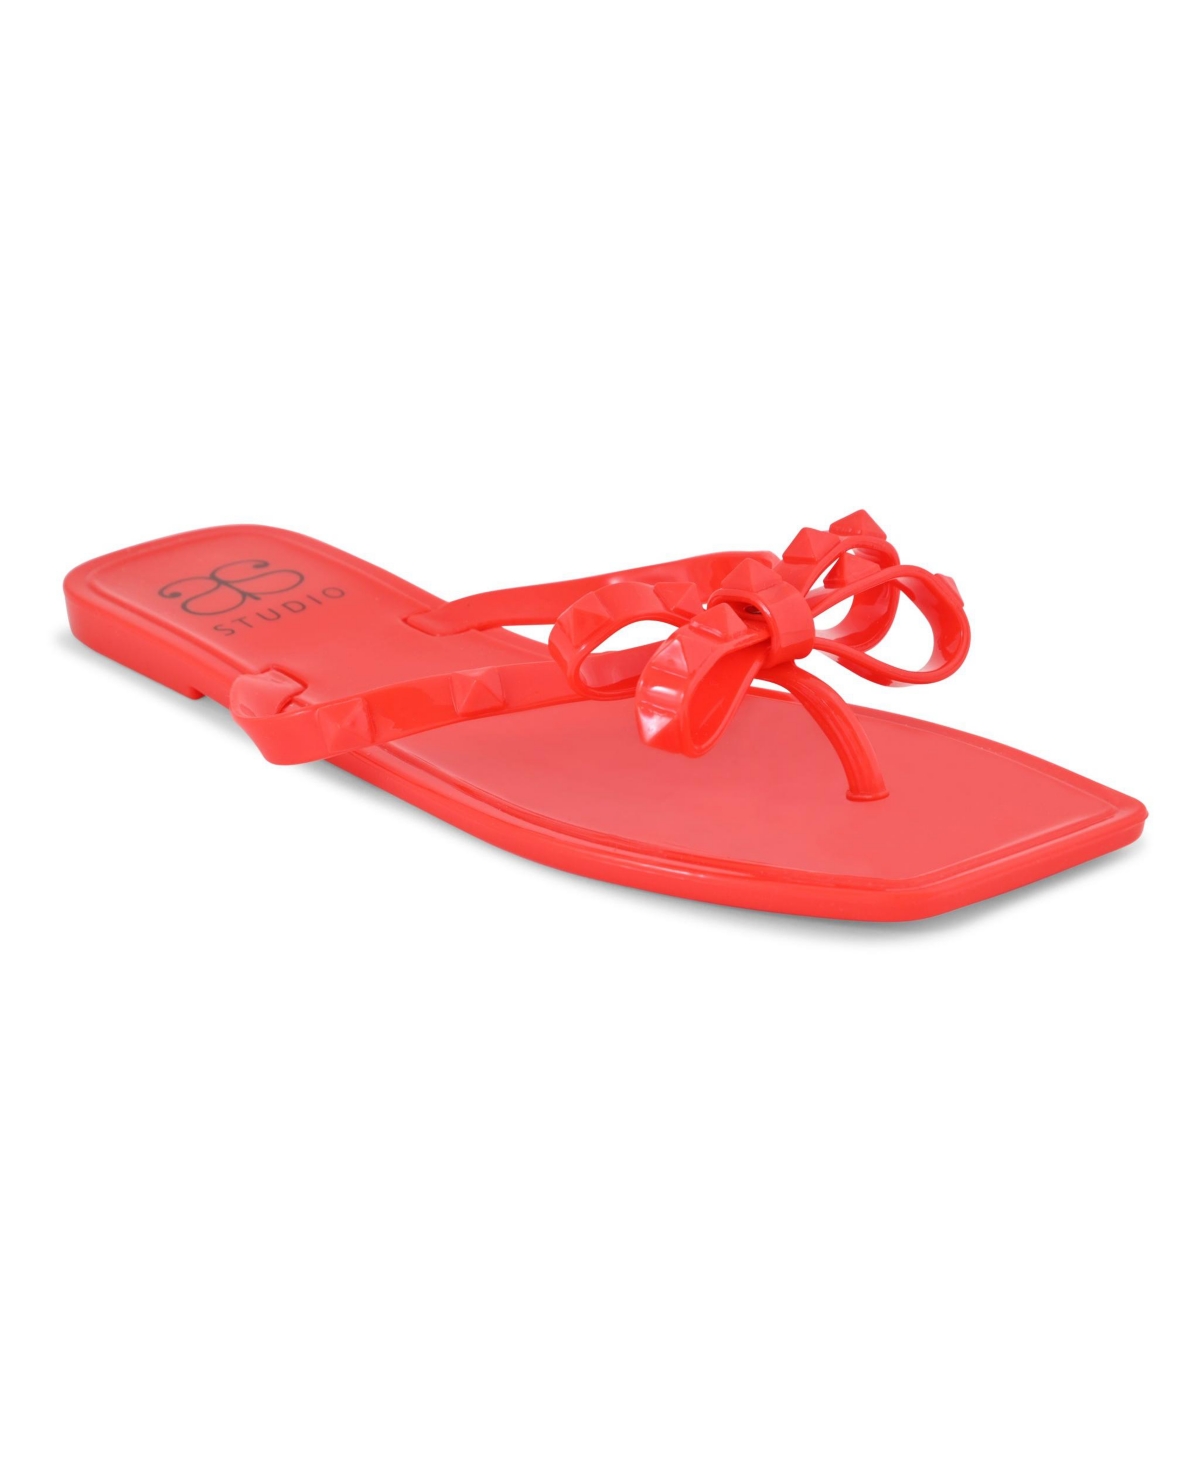 Women's Vallie Sandals - Red